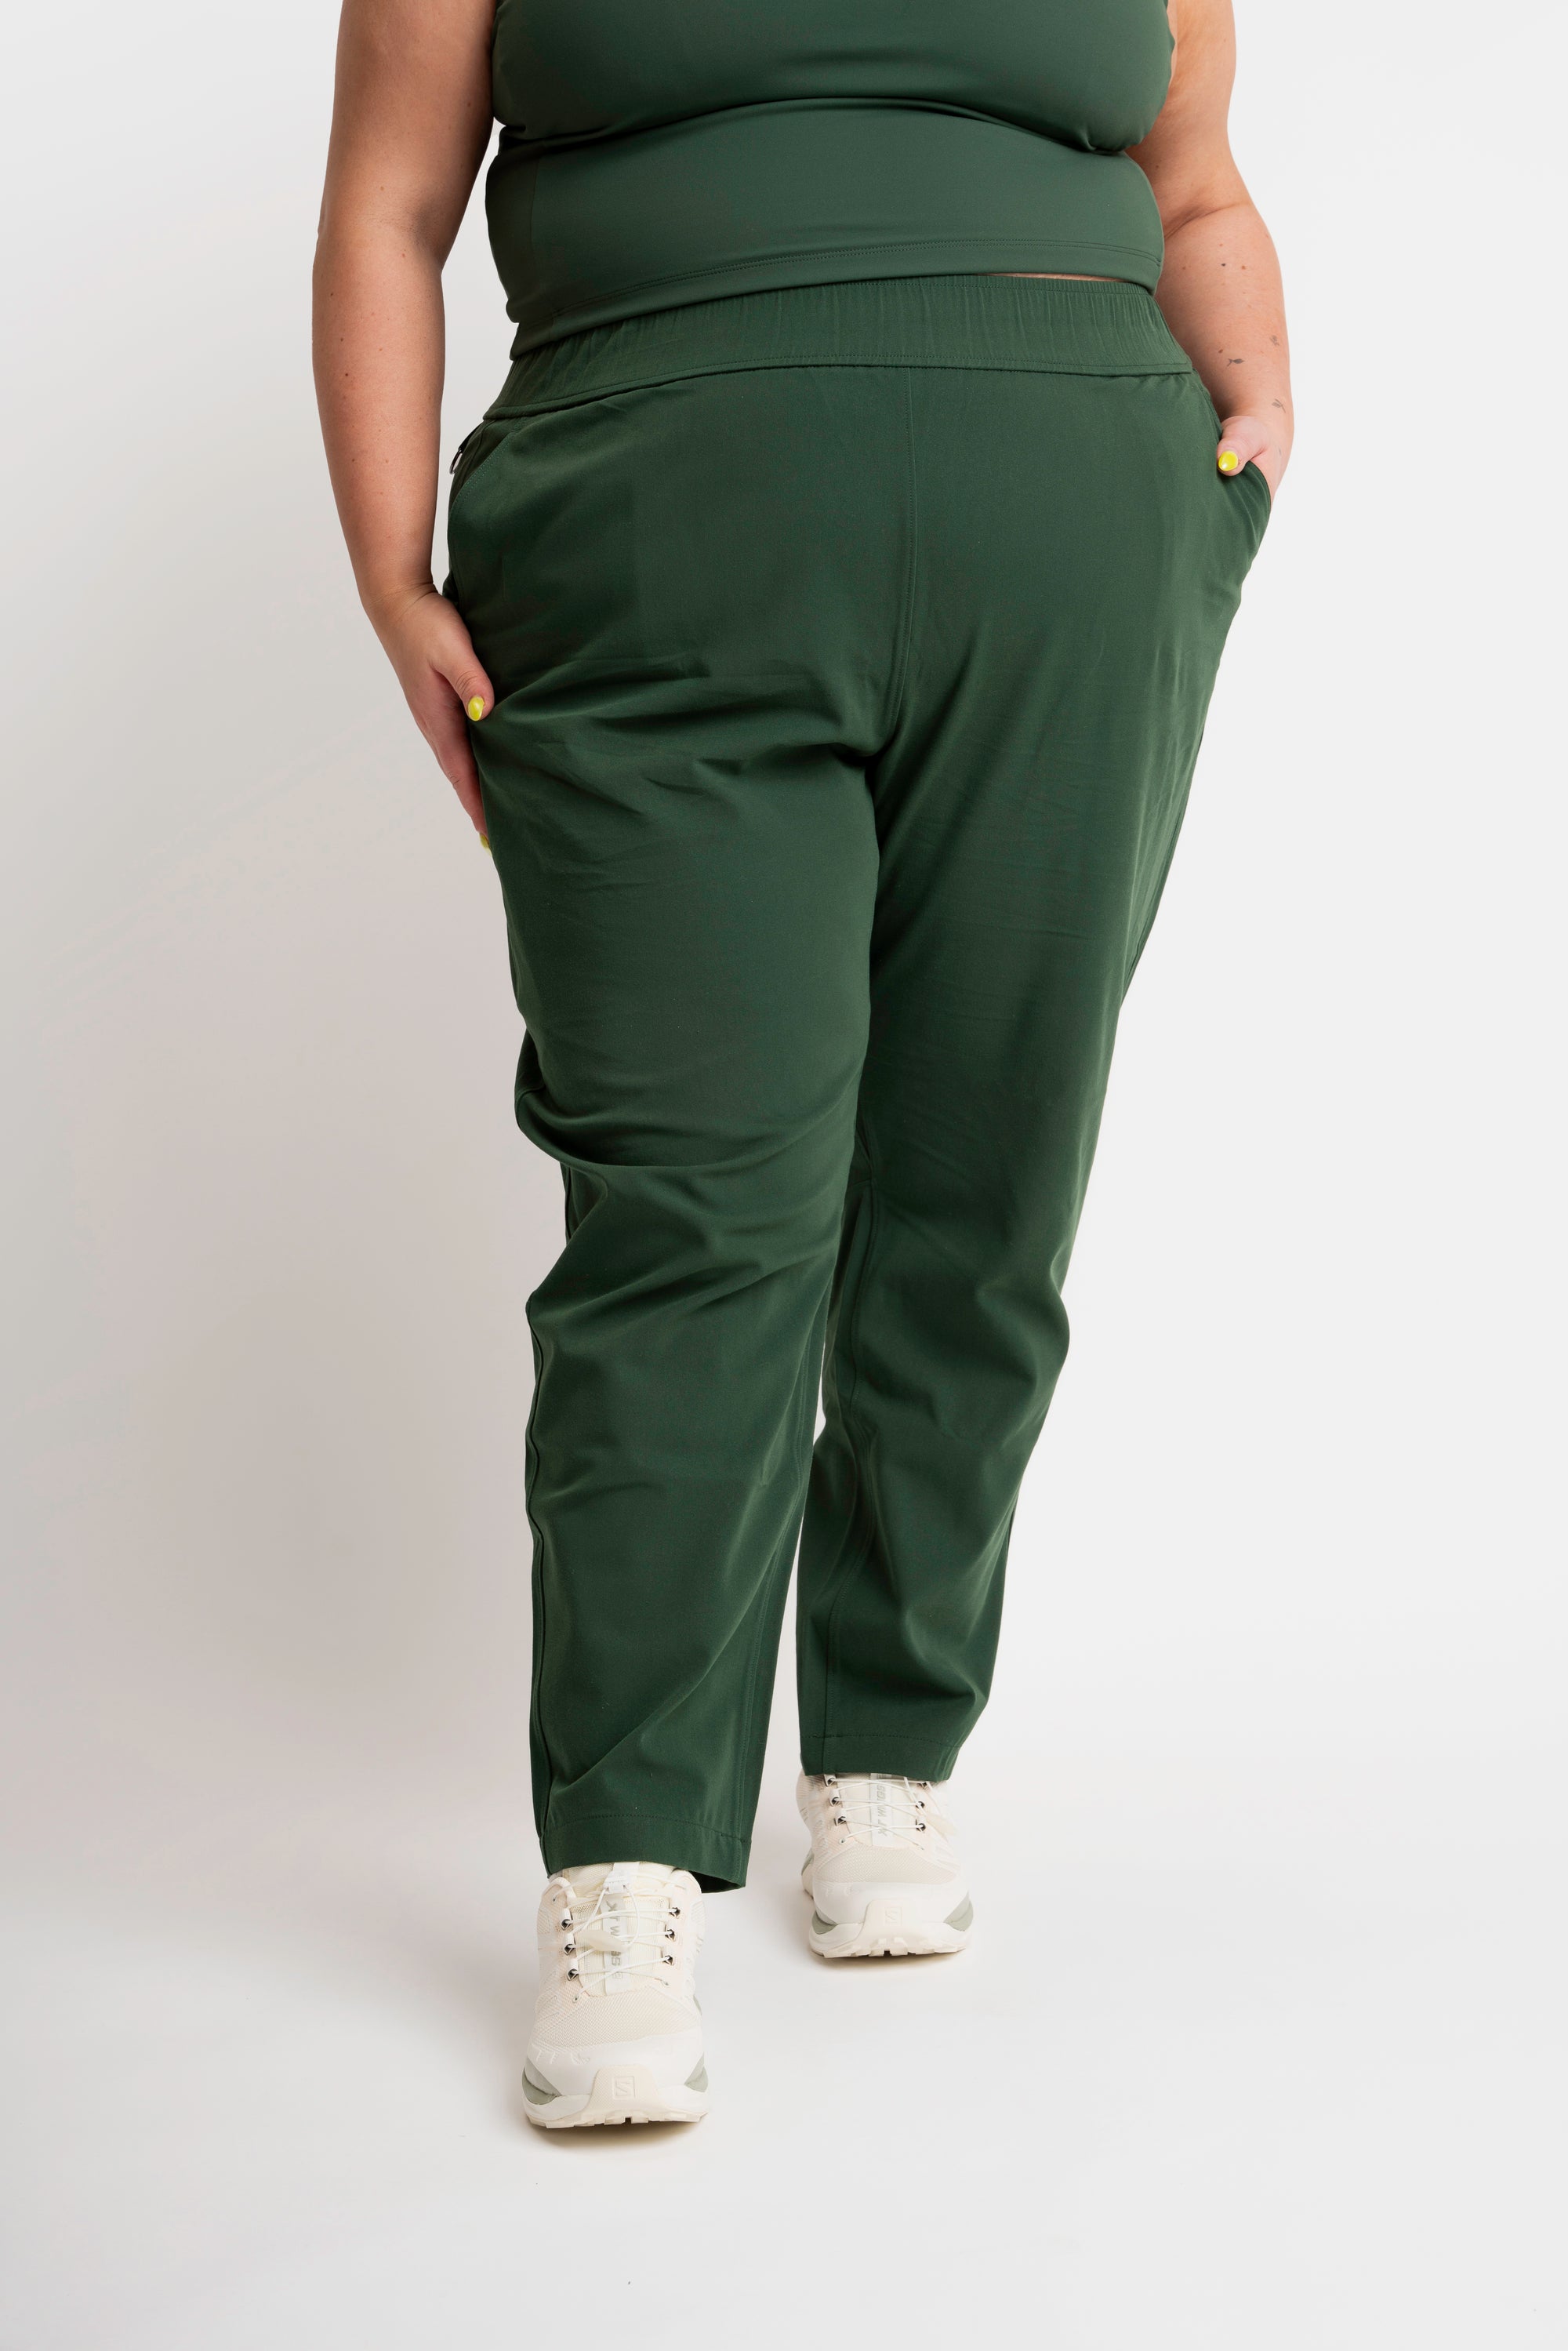 Basic Editions Womens Pants SZ L Olive Green Elastic Waist